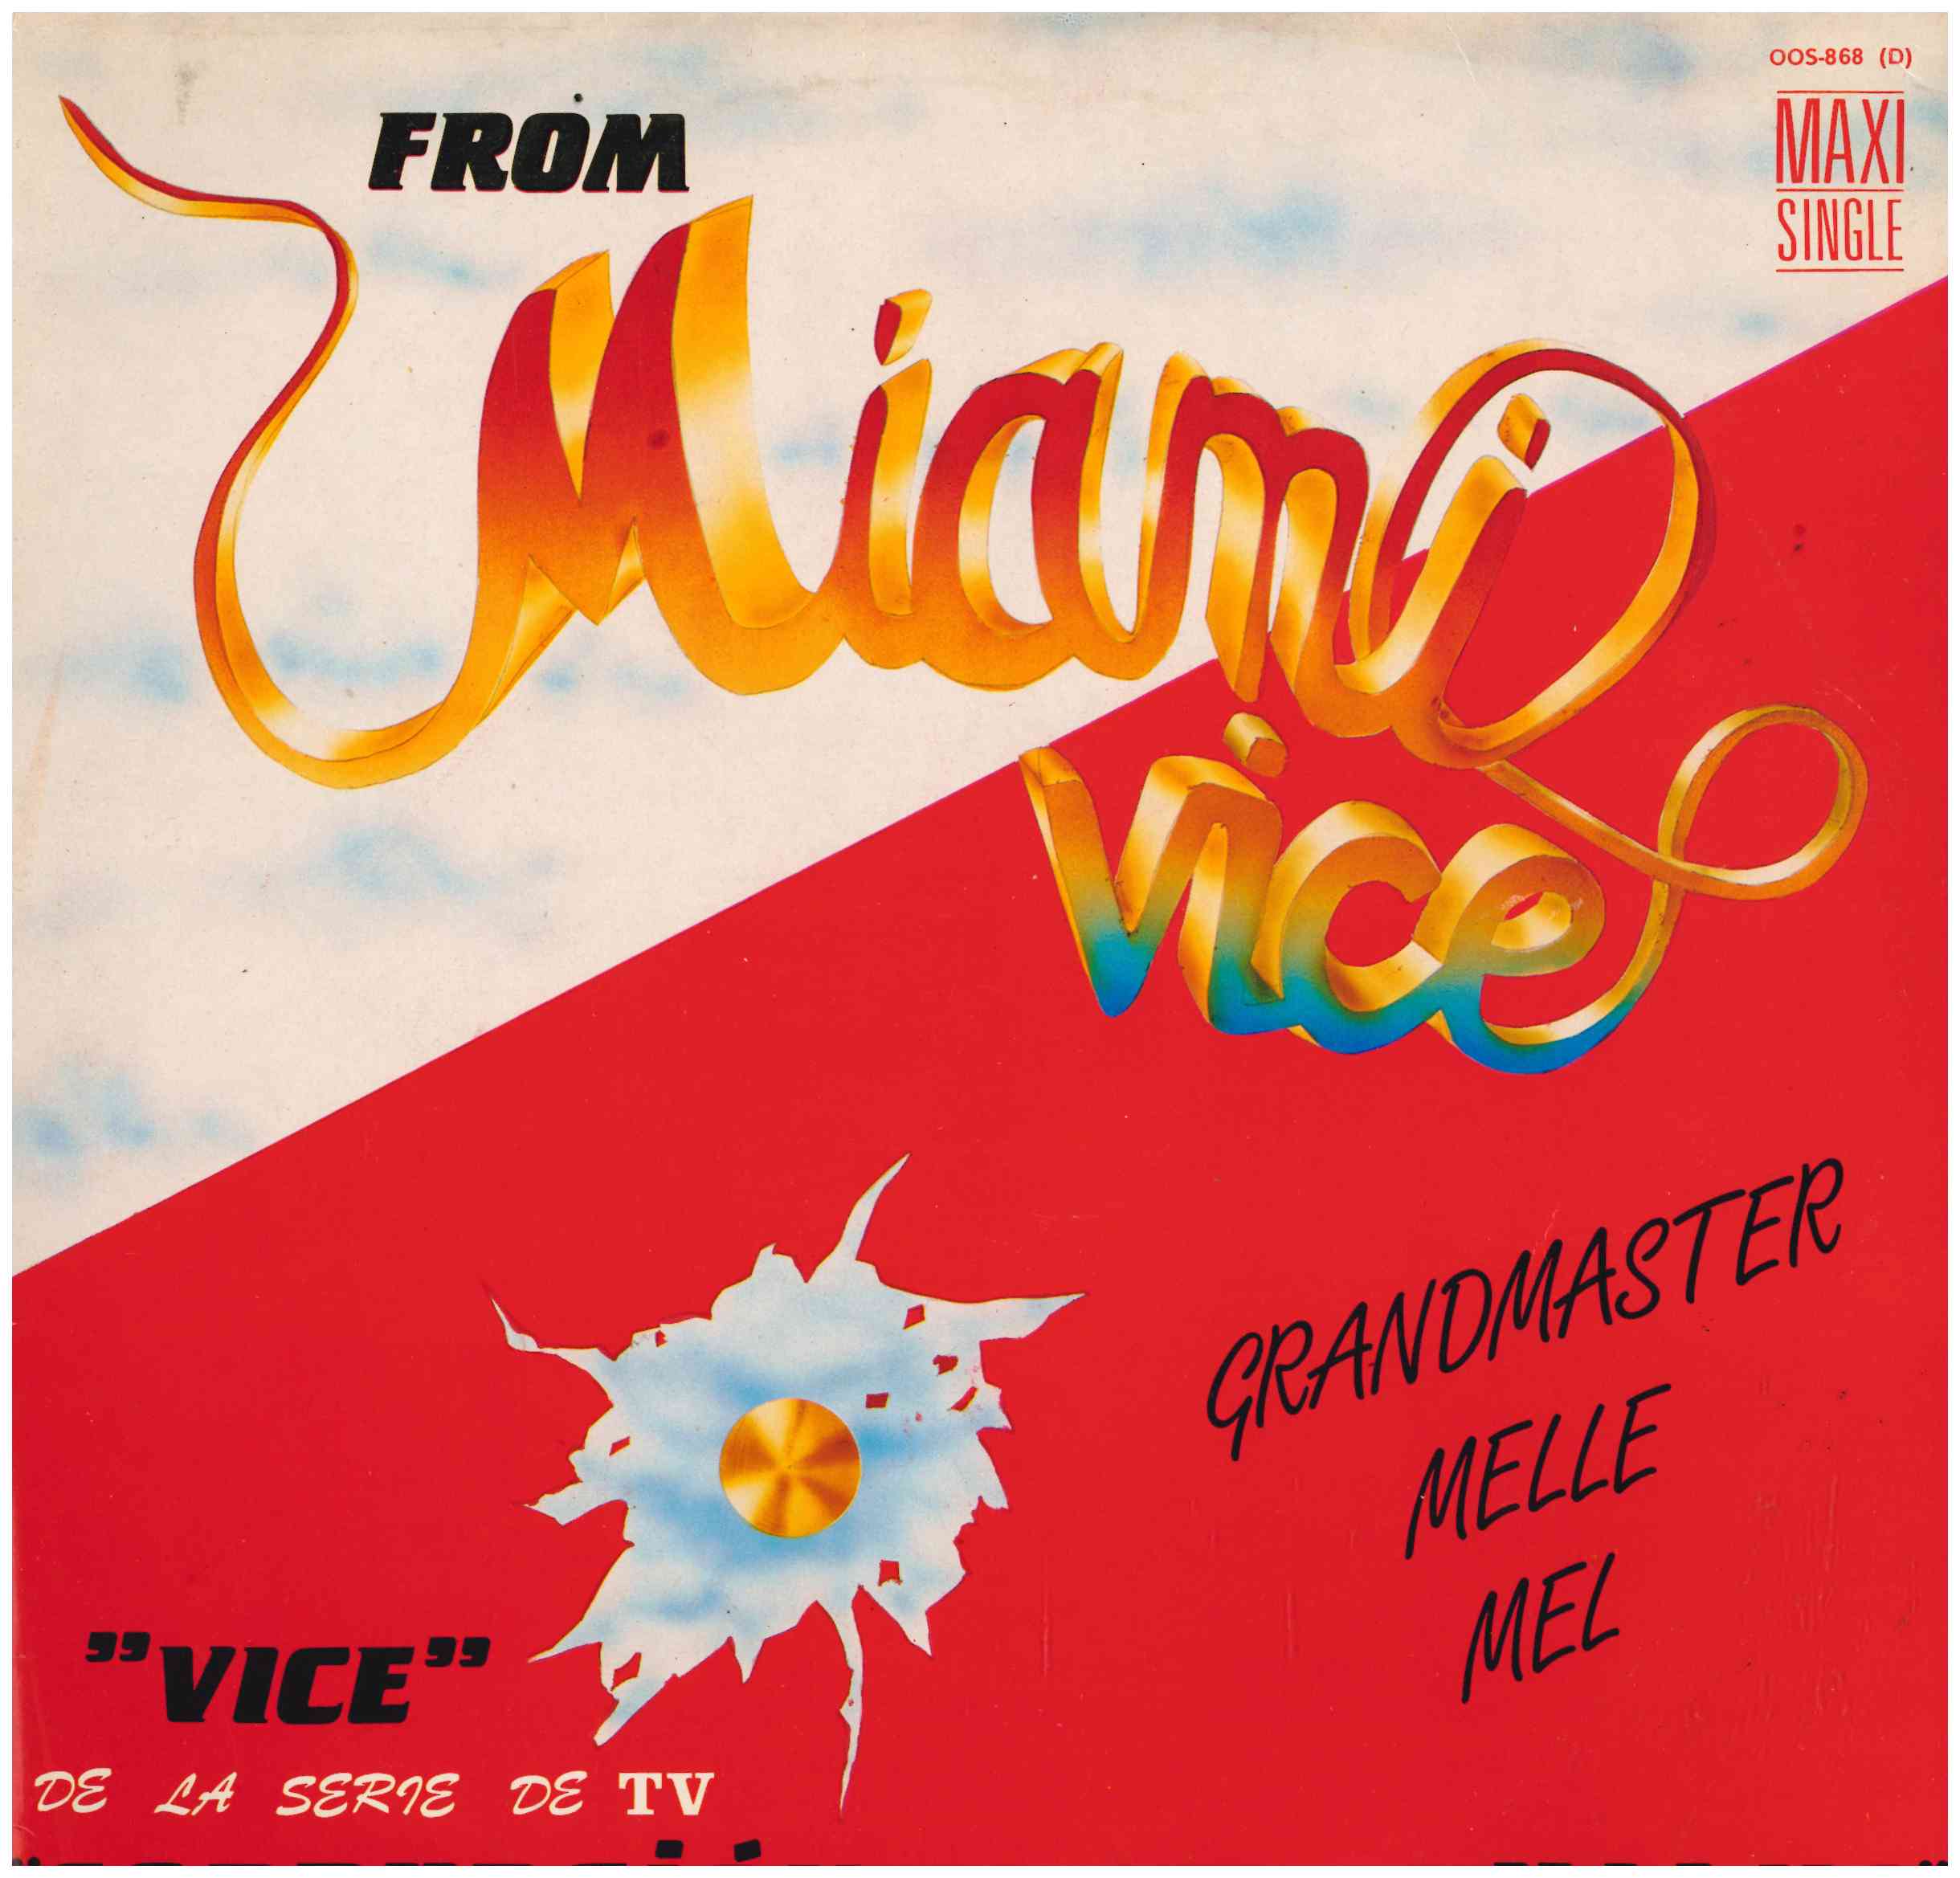 Grandmaster Melle Mel. Corrupción en Miami (Maxi Single 45 RPM) Zafiro 1986 (OOS 868)